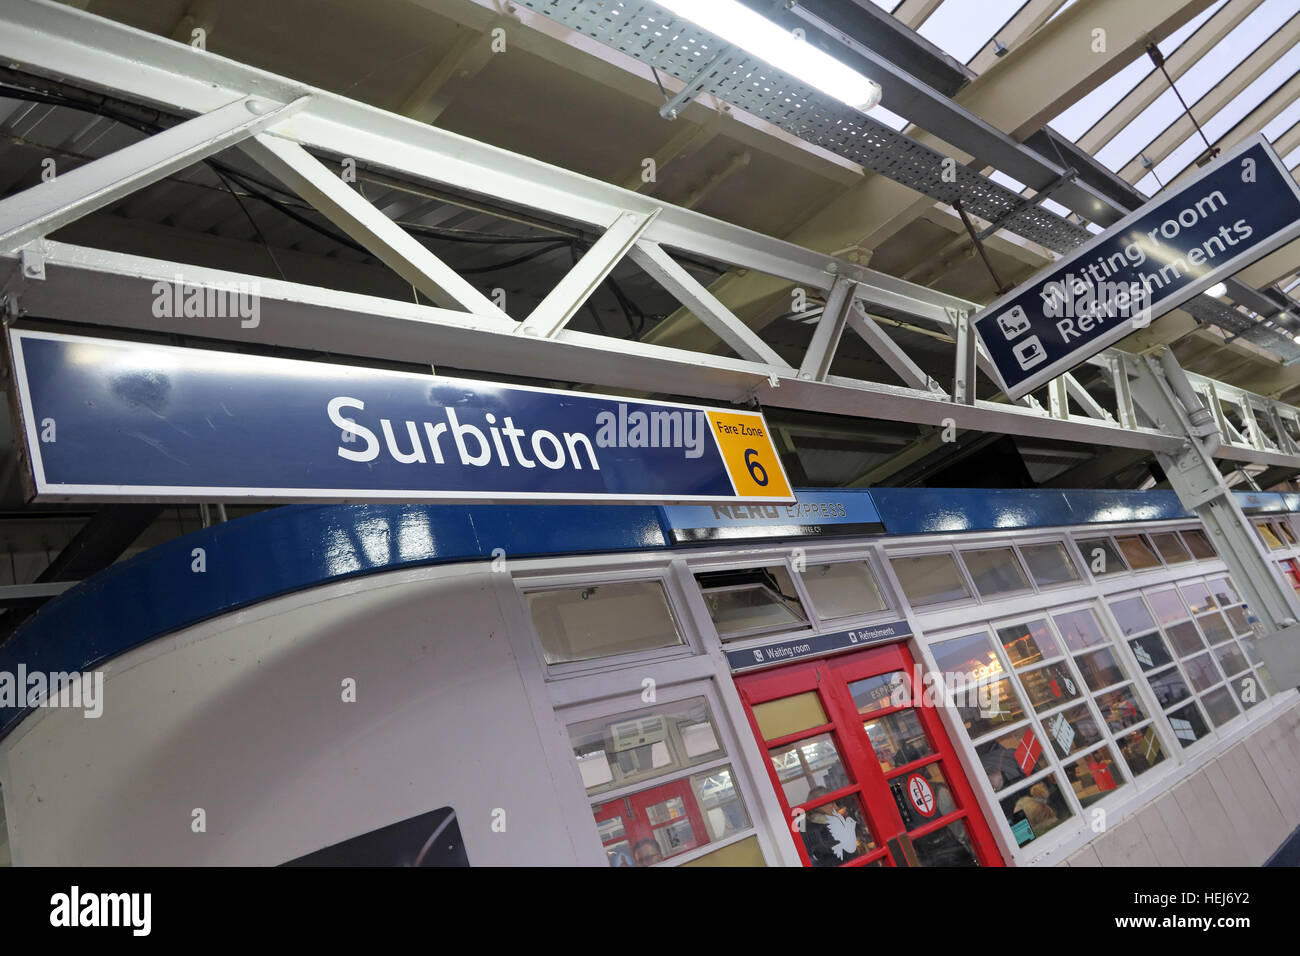 Surbiton Railway Station Waiting Room on Platform 3, Kingston,West London,England,UK Stock Photo